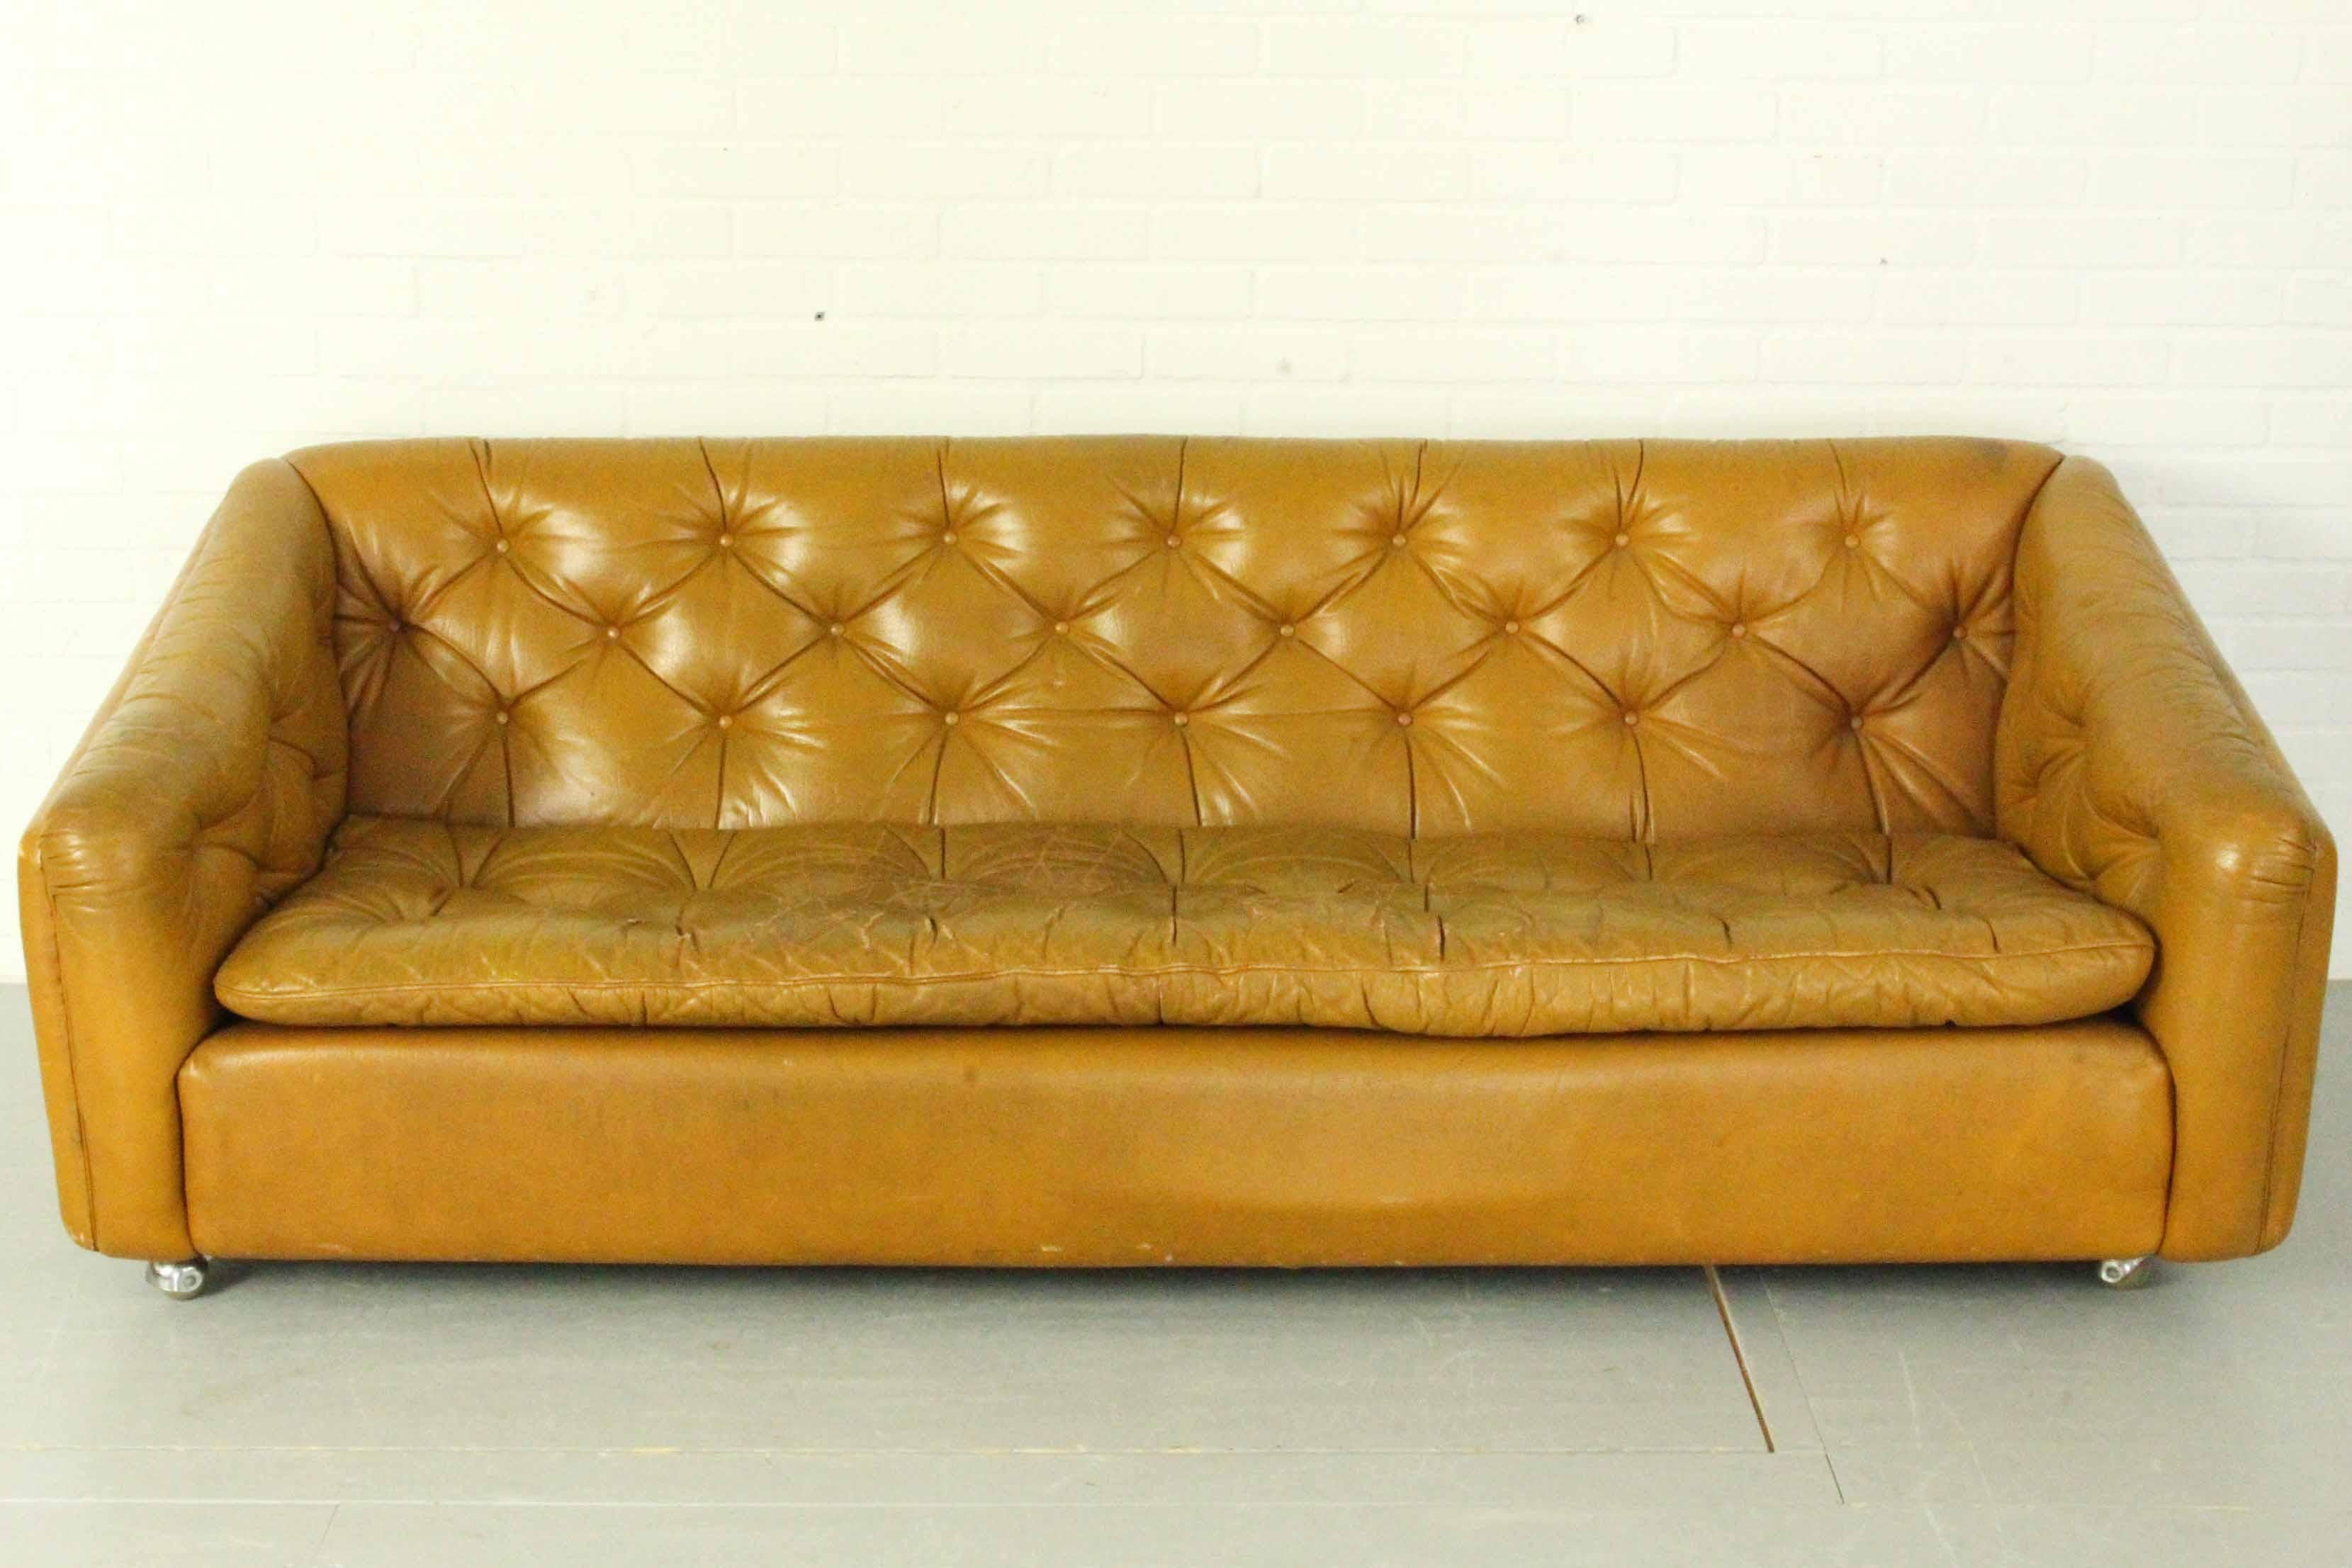 Magnifique canapé classique design avec revêtement en cuir cognac. Le canapé est en état vintage, le cuir montre son âge avec des rayures de patine et des fissures, mais pas de déchirures.